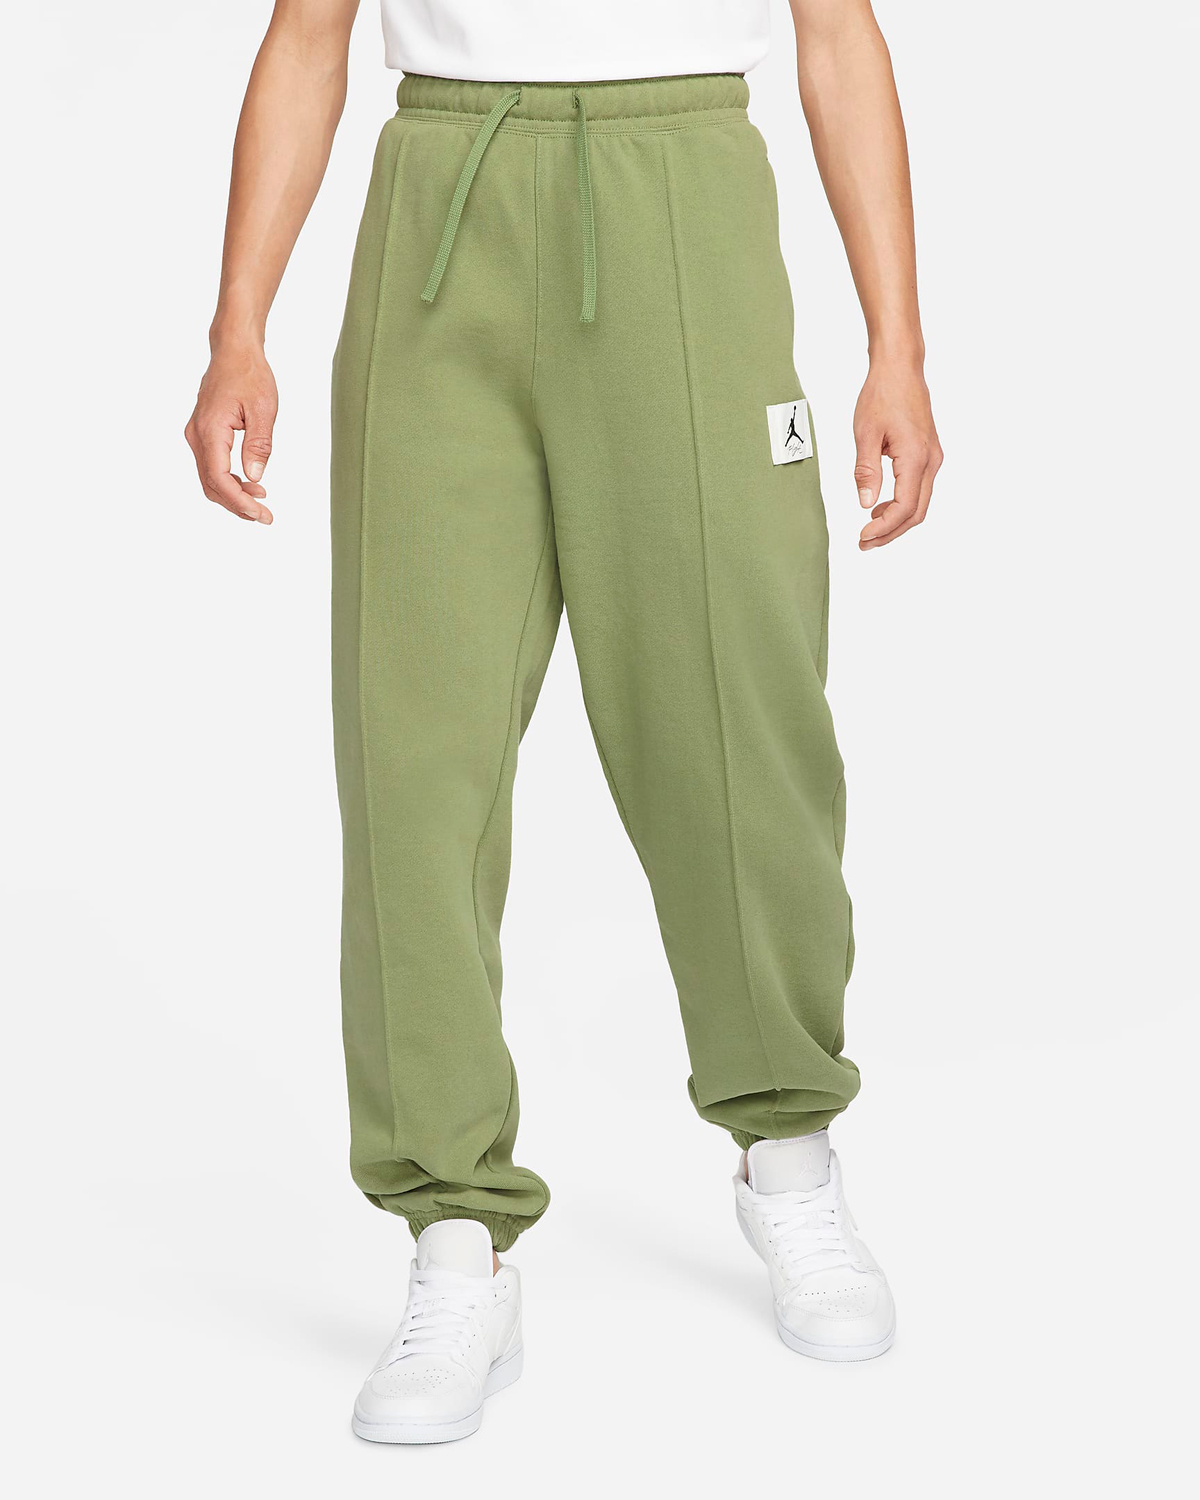 Jordan-Essentials-Womens-Fleece-Pants-Olive-Green-1